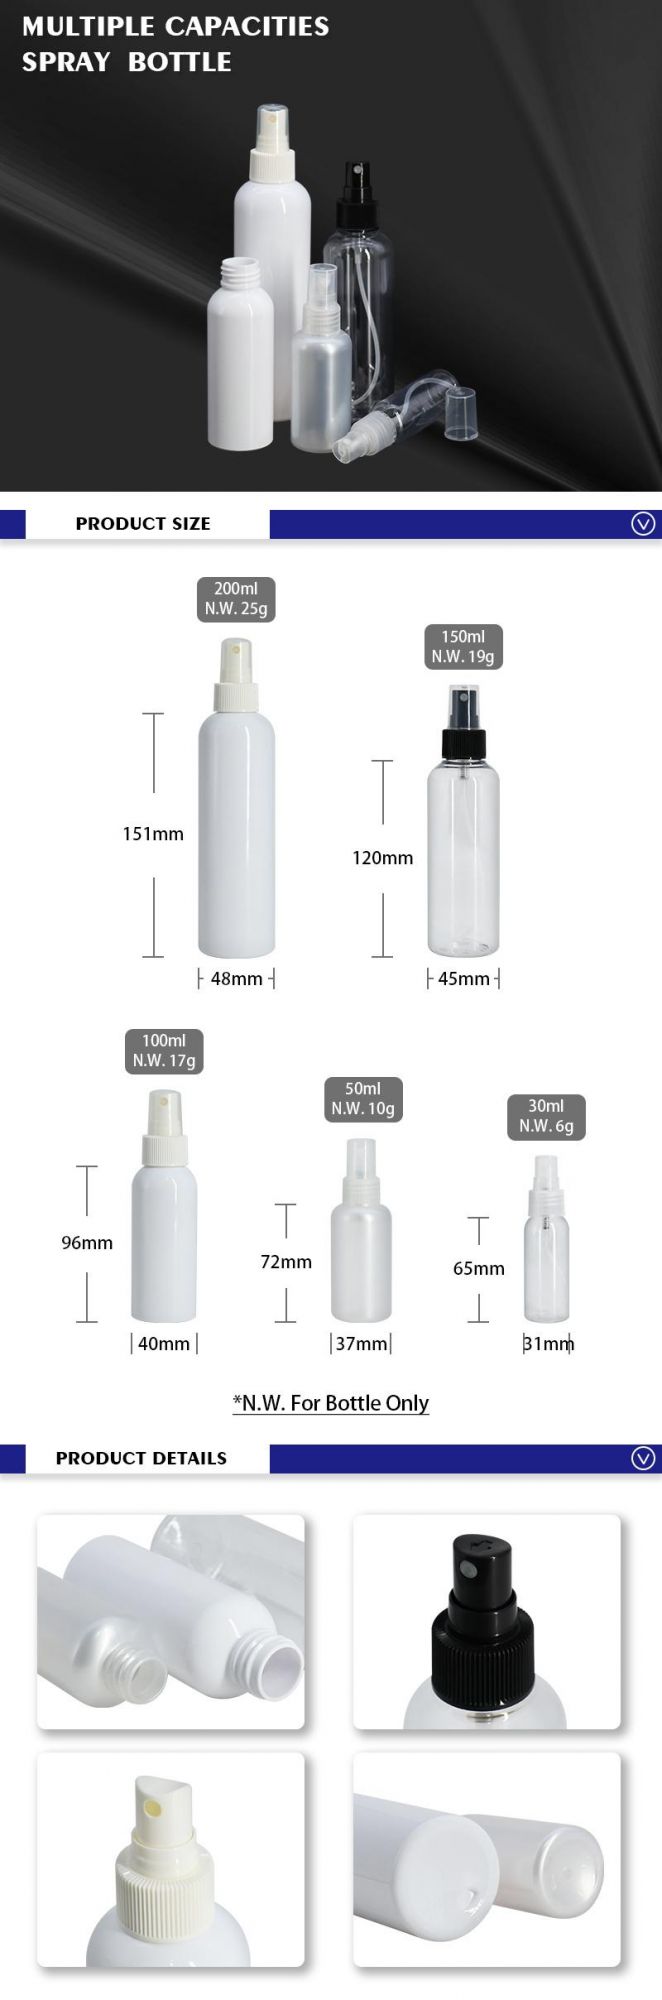 Hot Selling Pet 250ml 150ml 100ml 50ml 30ml Multiple Capacities Spray Bottle for Skincare